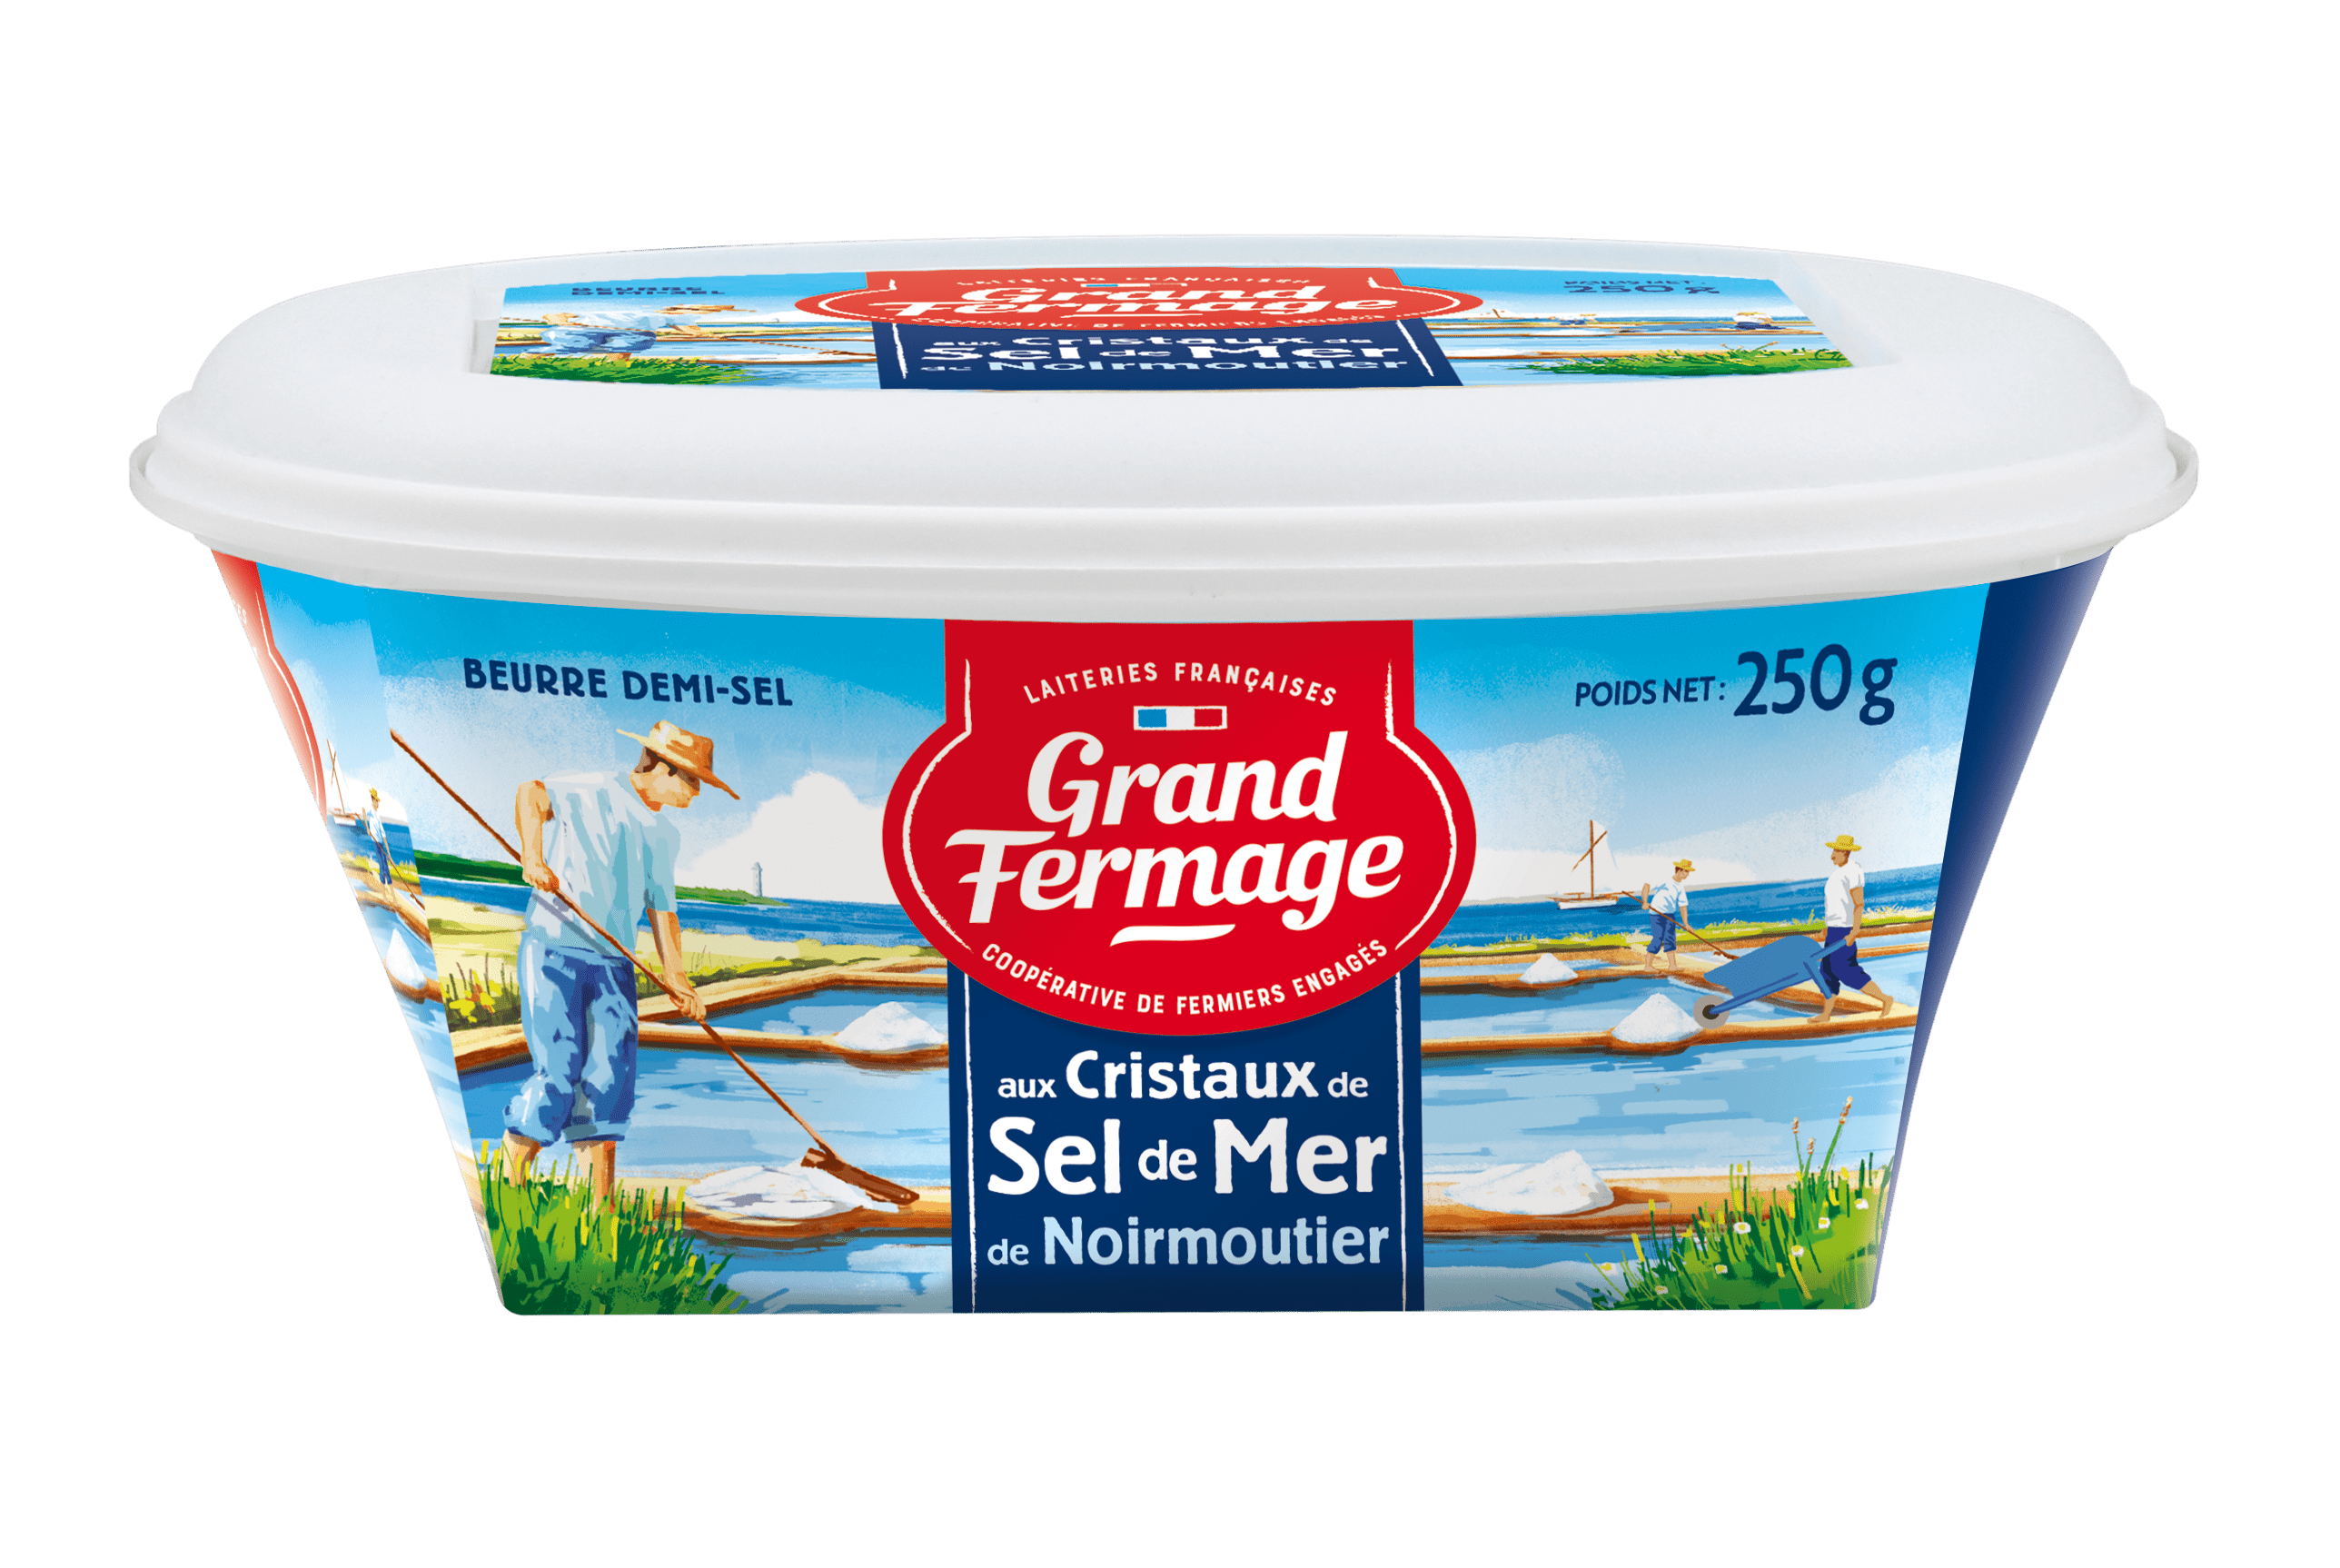 Beurre Demi-Sel au Sel de Mer de Noirmoutier - Grand Fermage